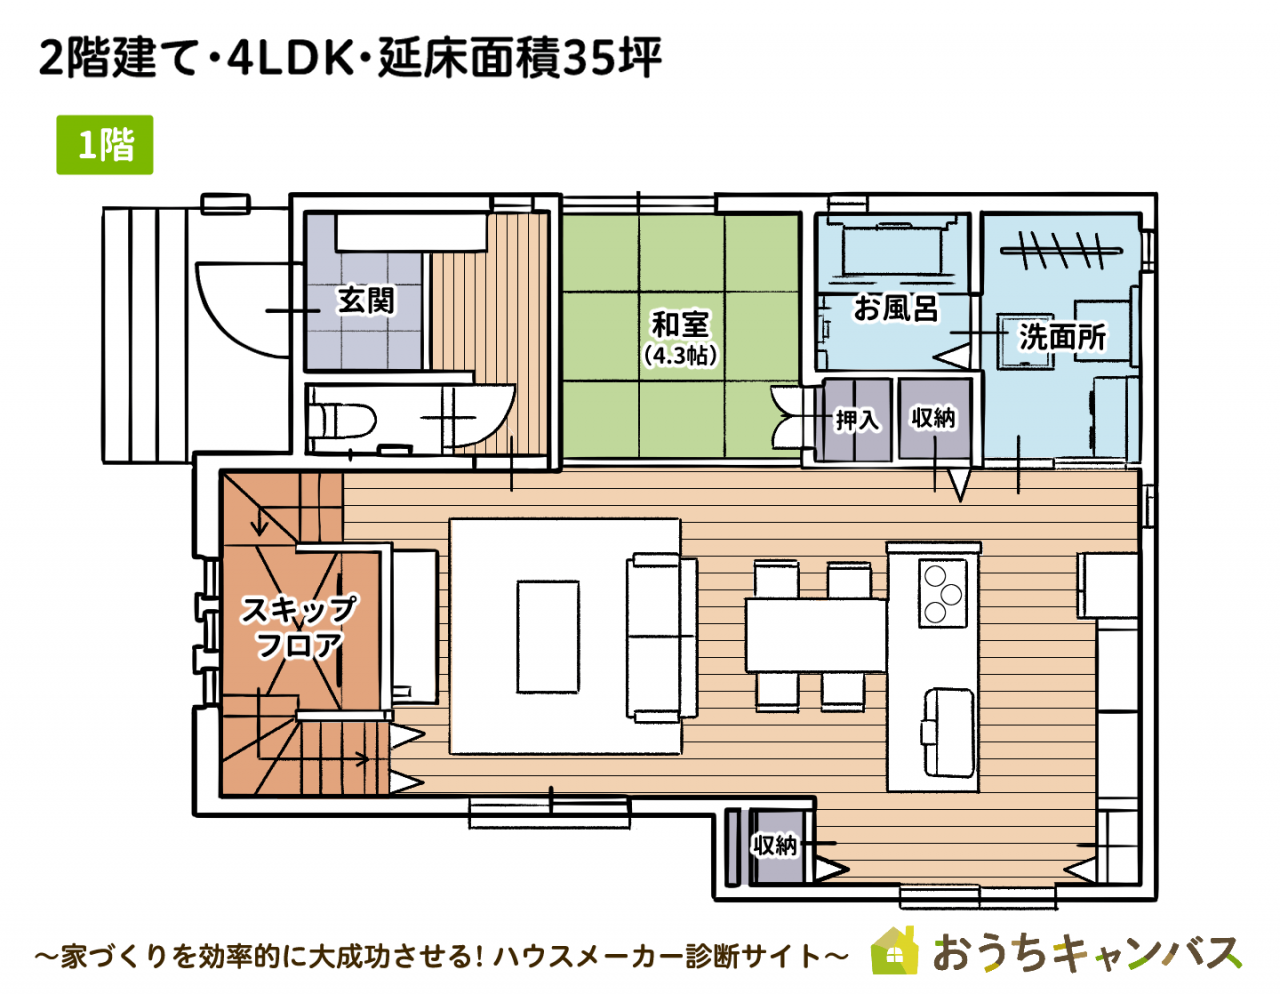 2階建て・４LDK・延べ床面積35坪の家1階